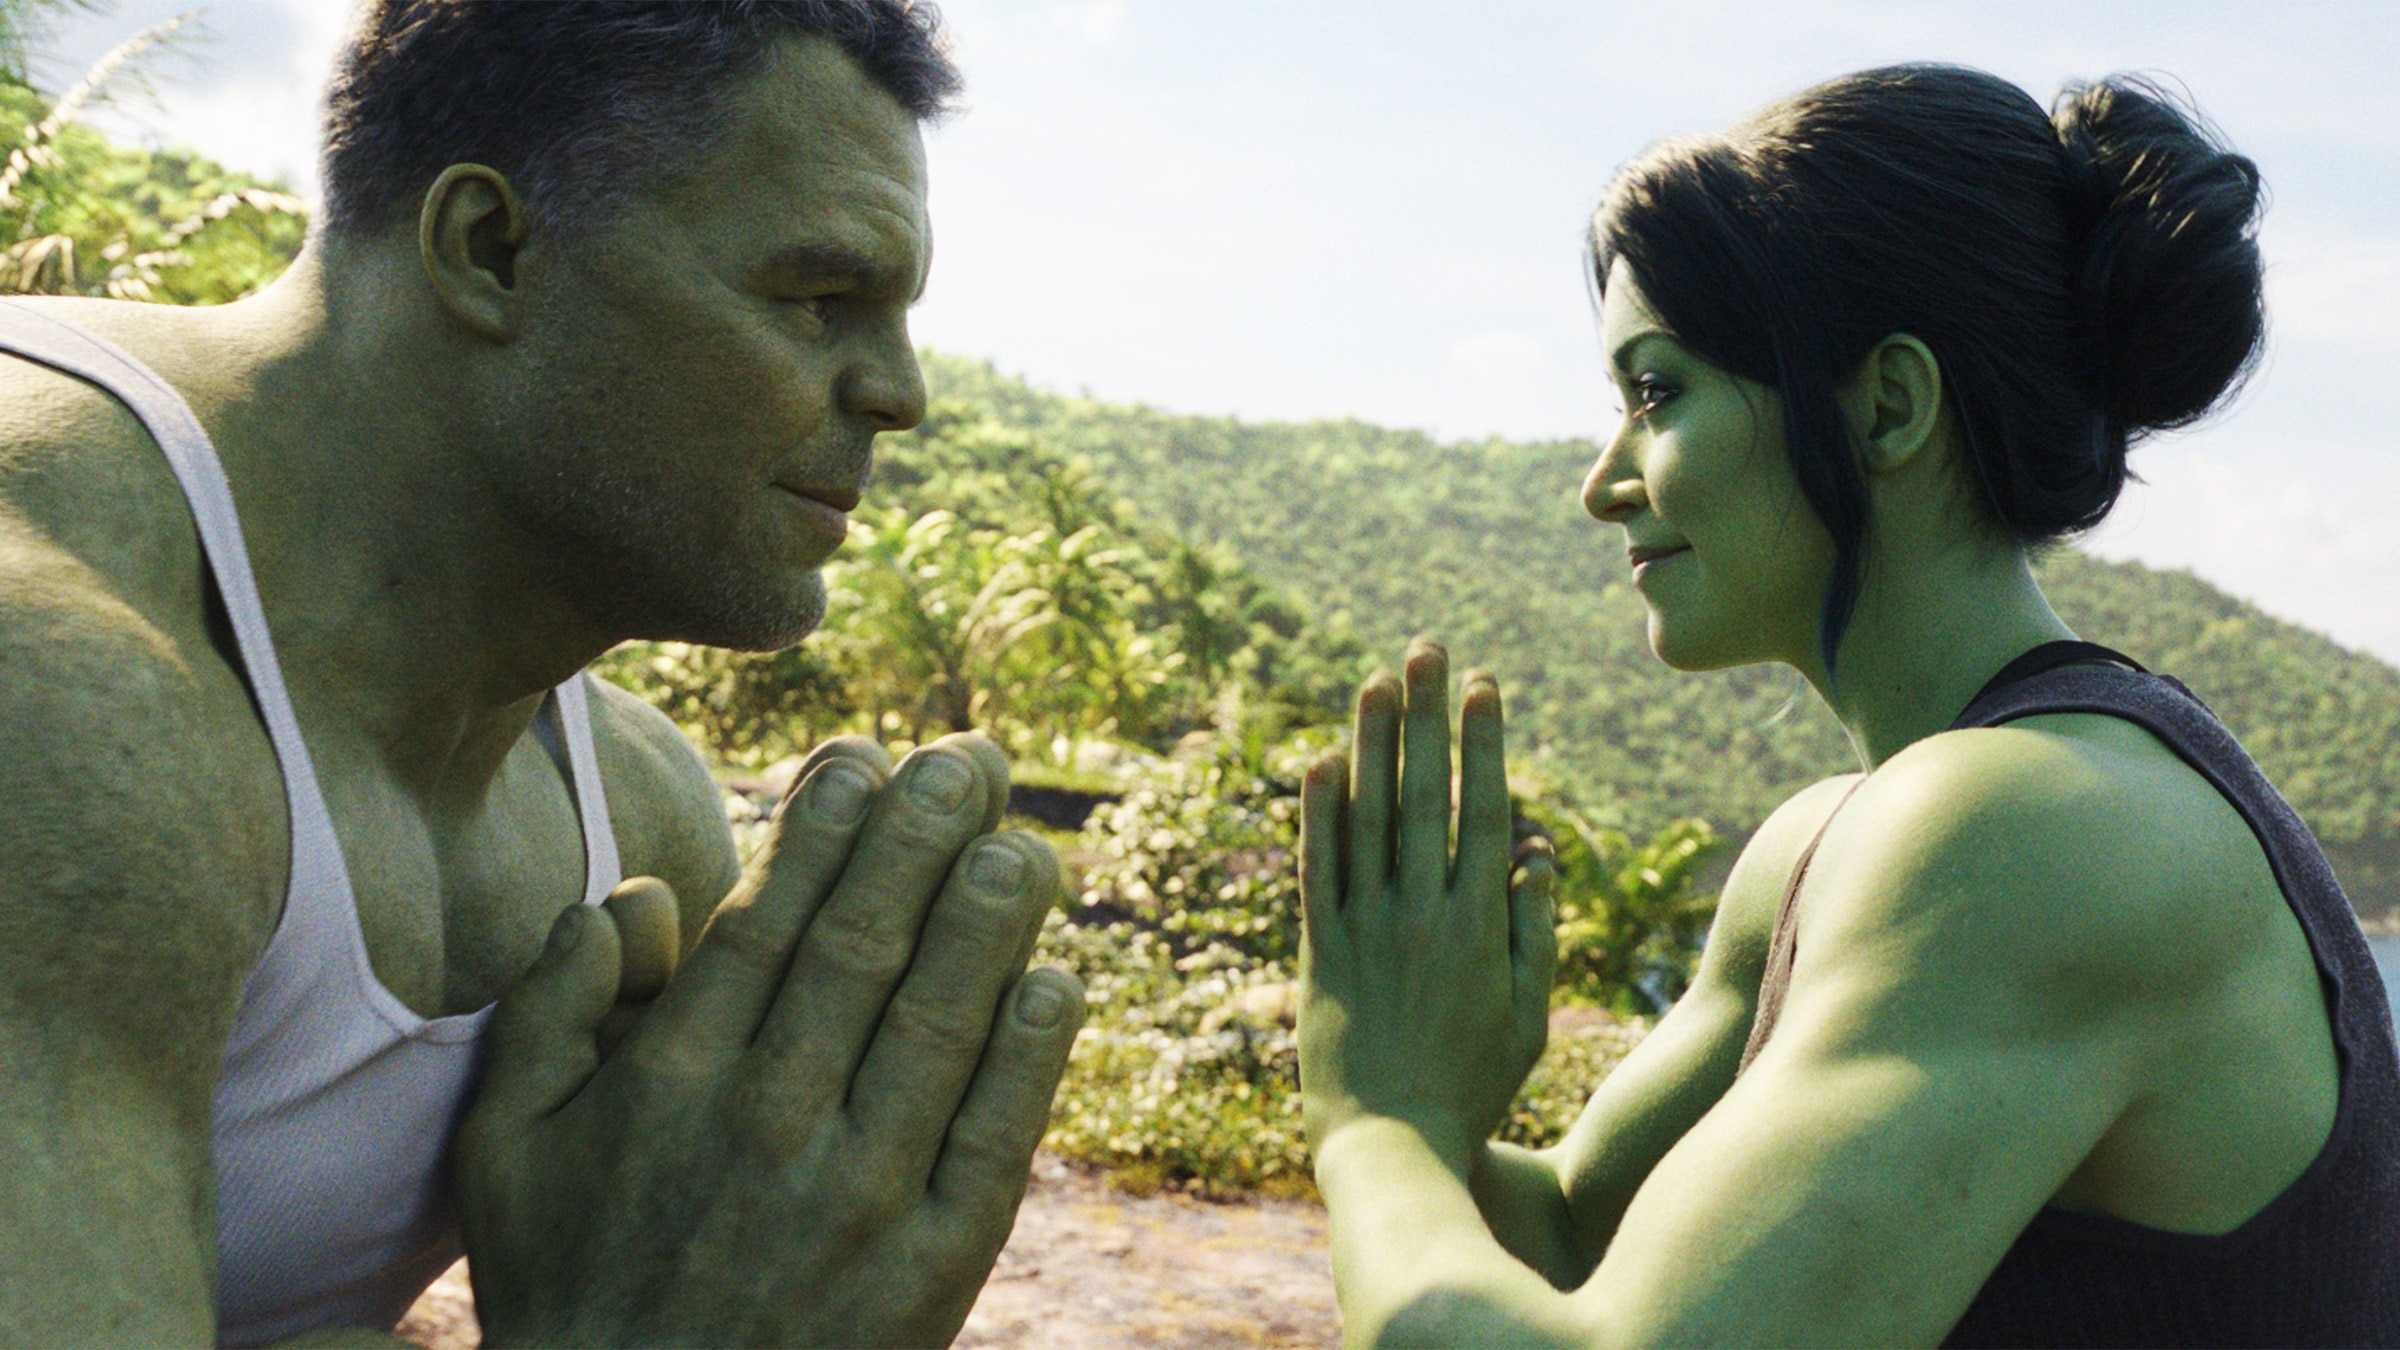 #She-Hulk: Attorney at Law: Season Two of Disney+ Series Unlikely Says Tatiana Maslany